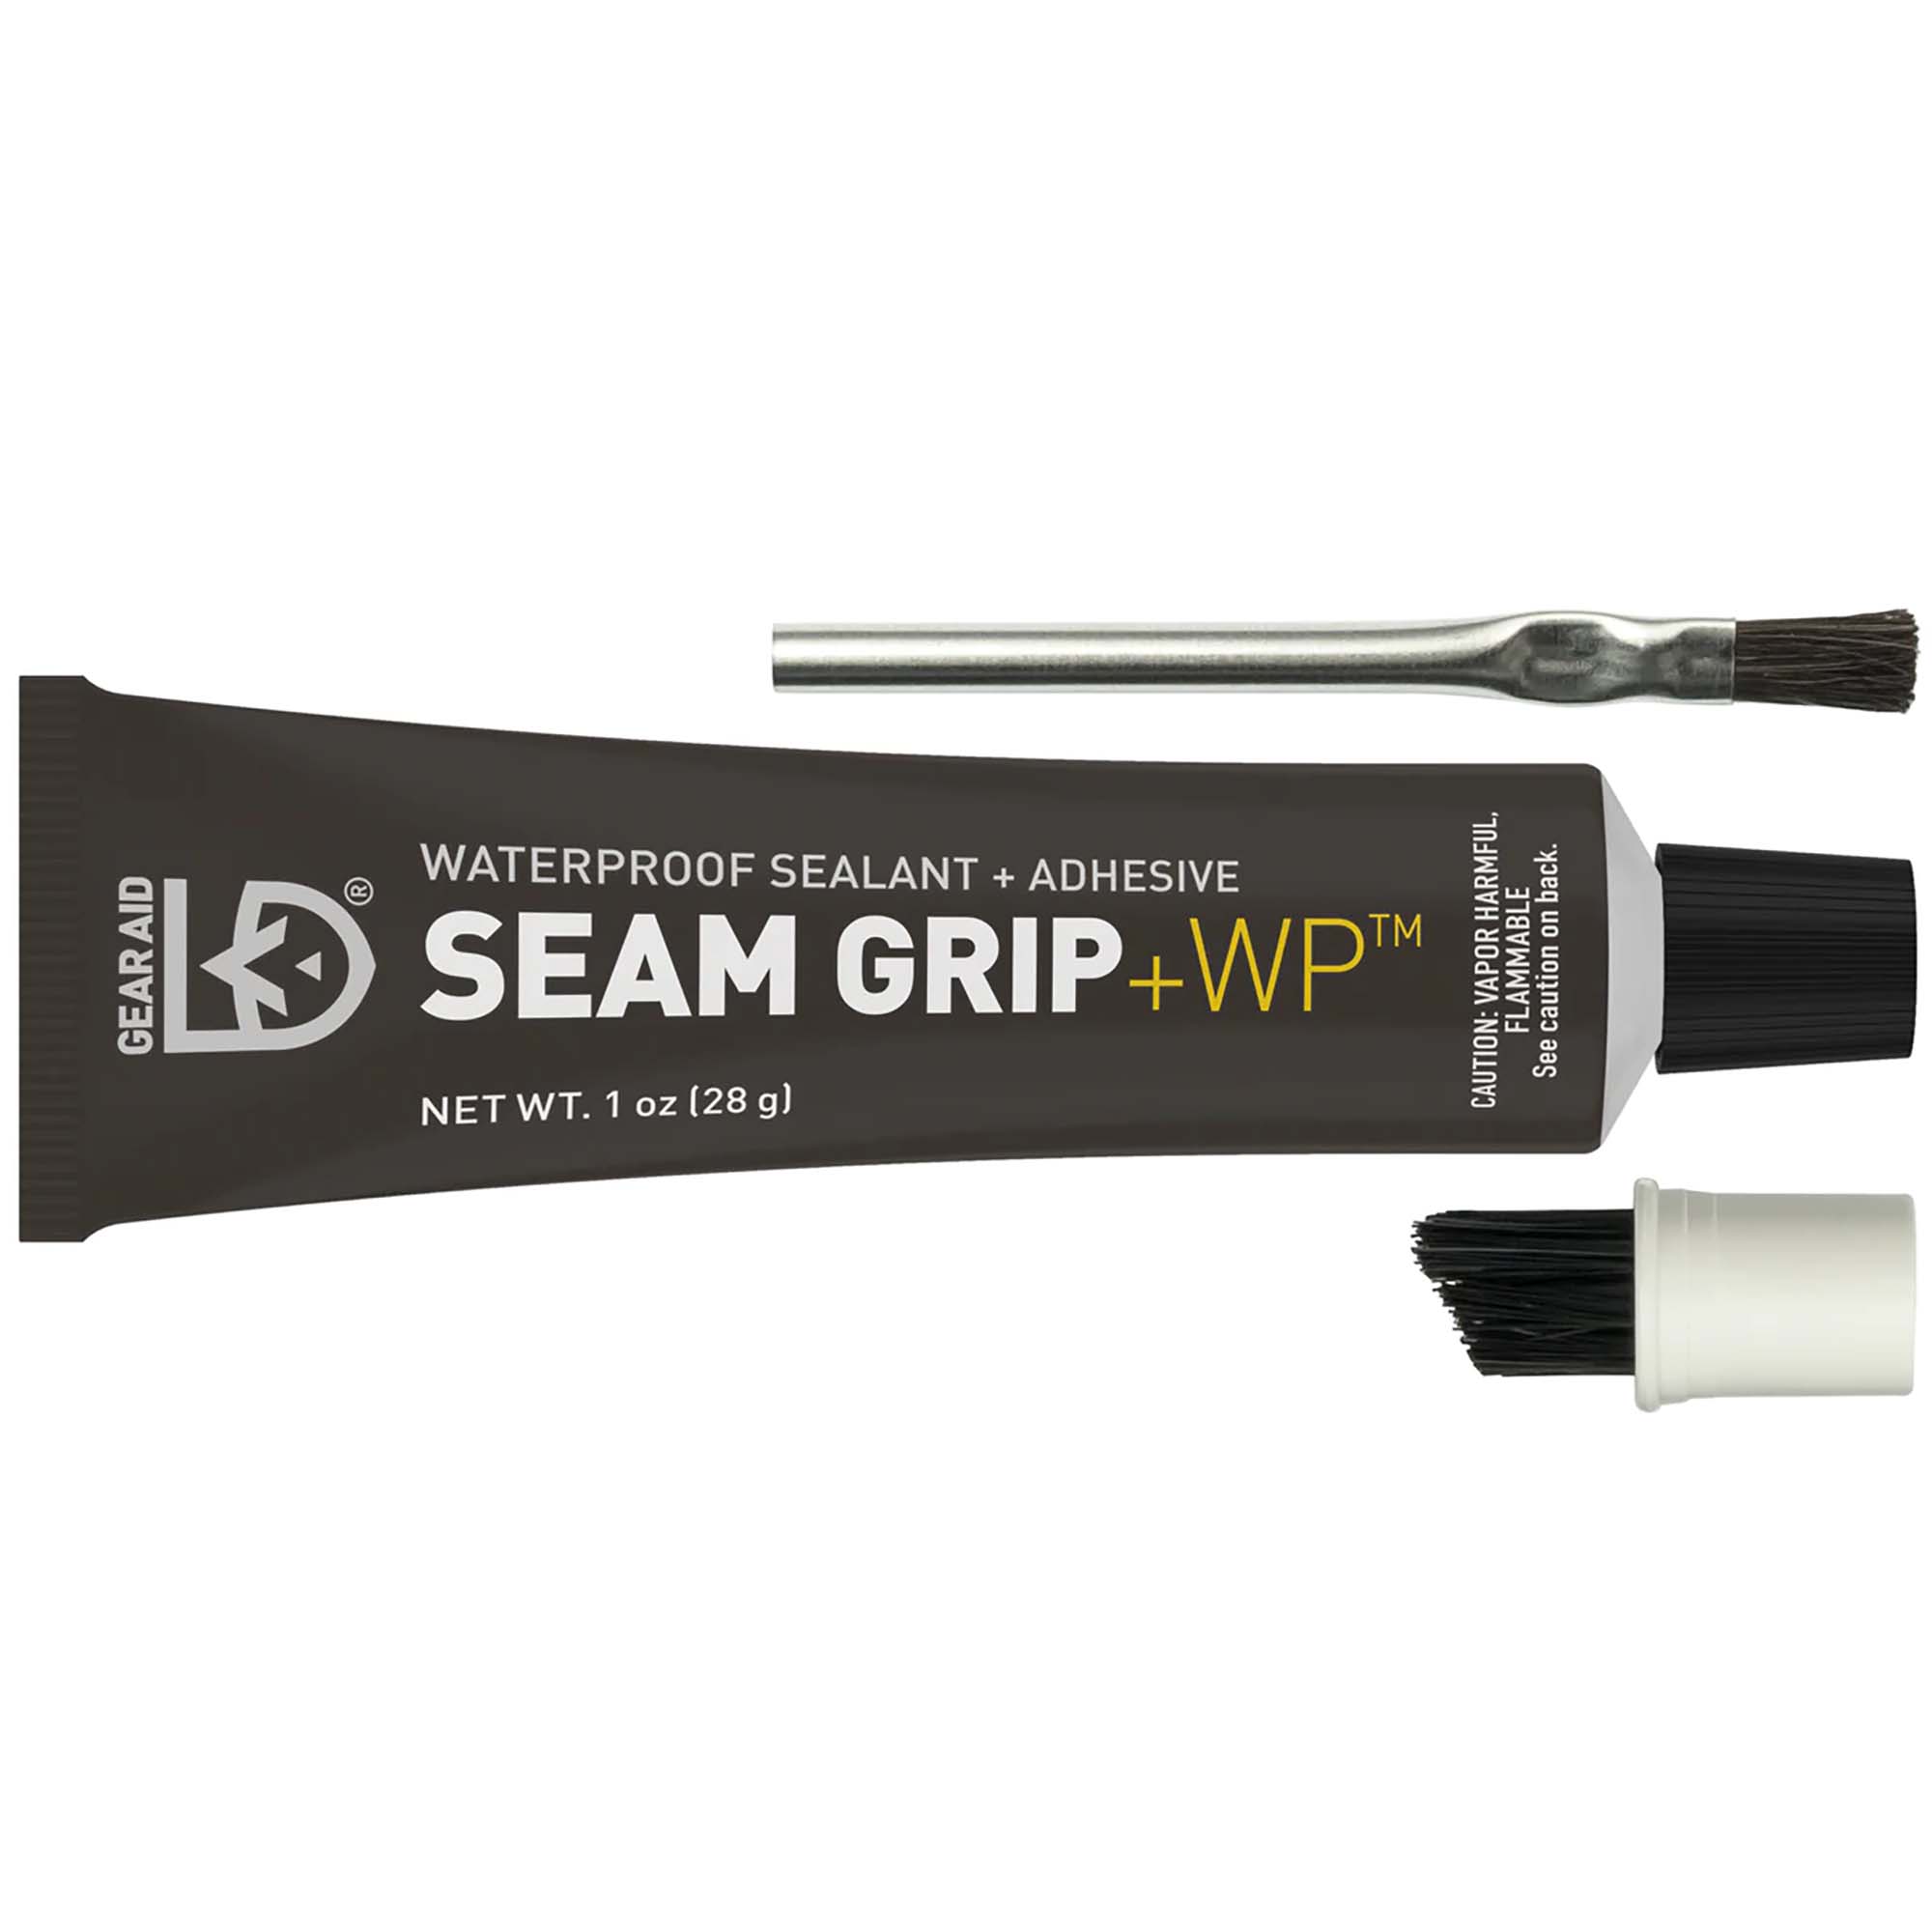 Gear Aid Seamgrip Seam Sealer Kit Waterproof Gear Repair Adhesive